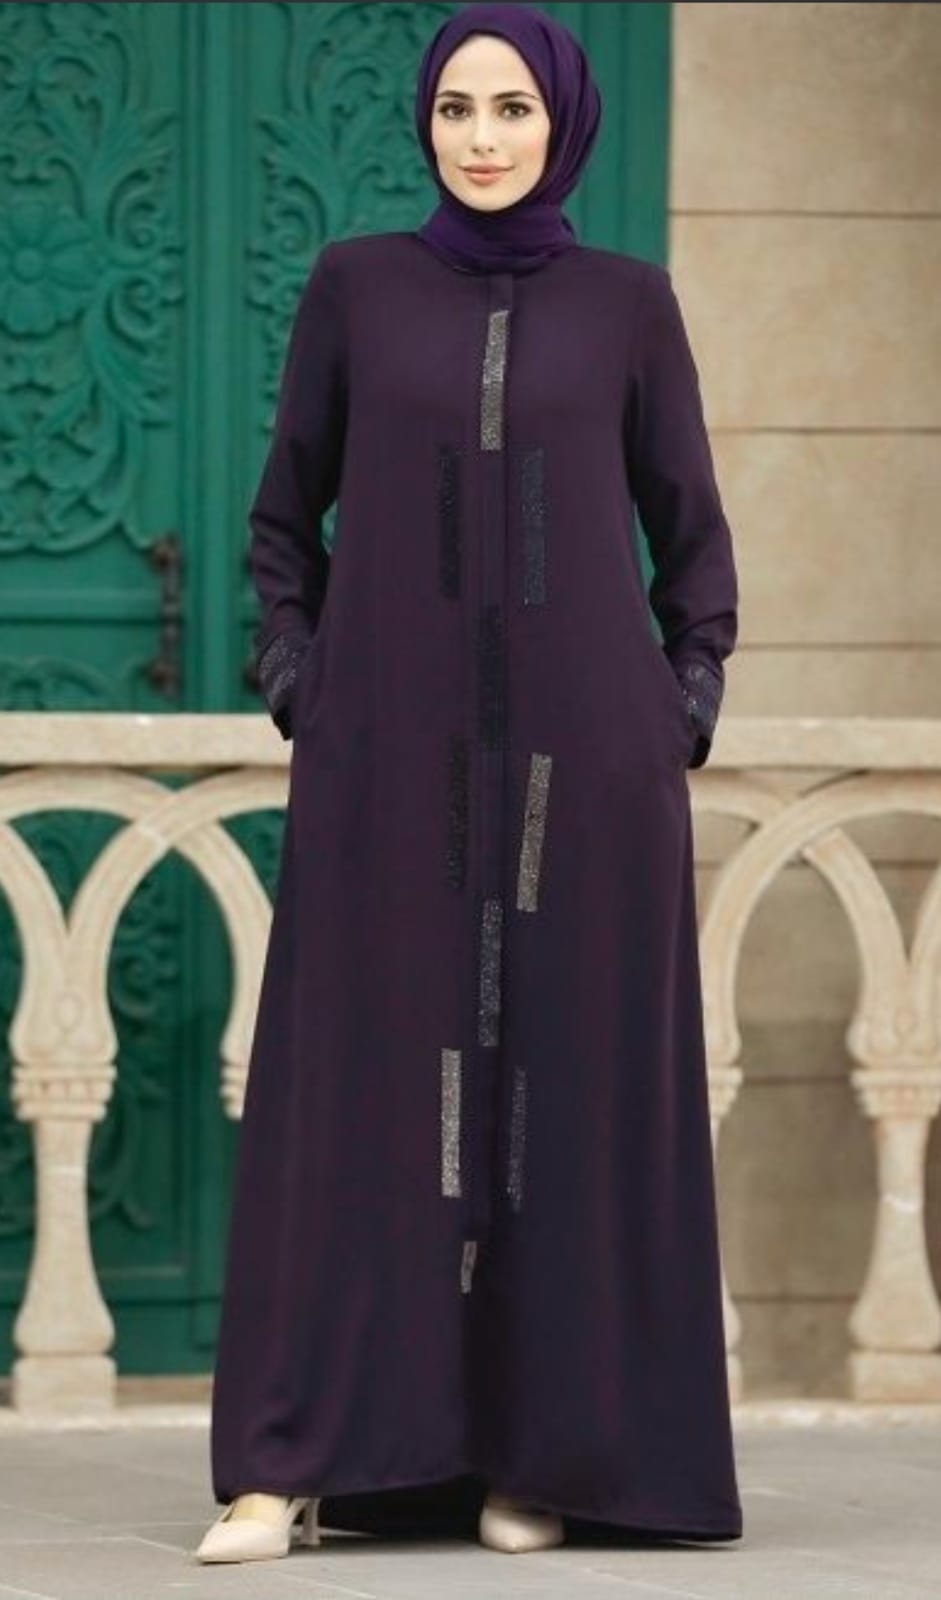 Samaira's Zenith Cloak Abaya